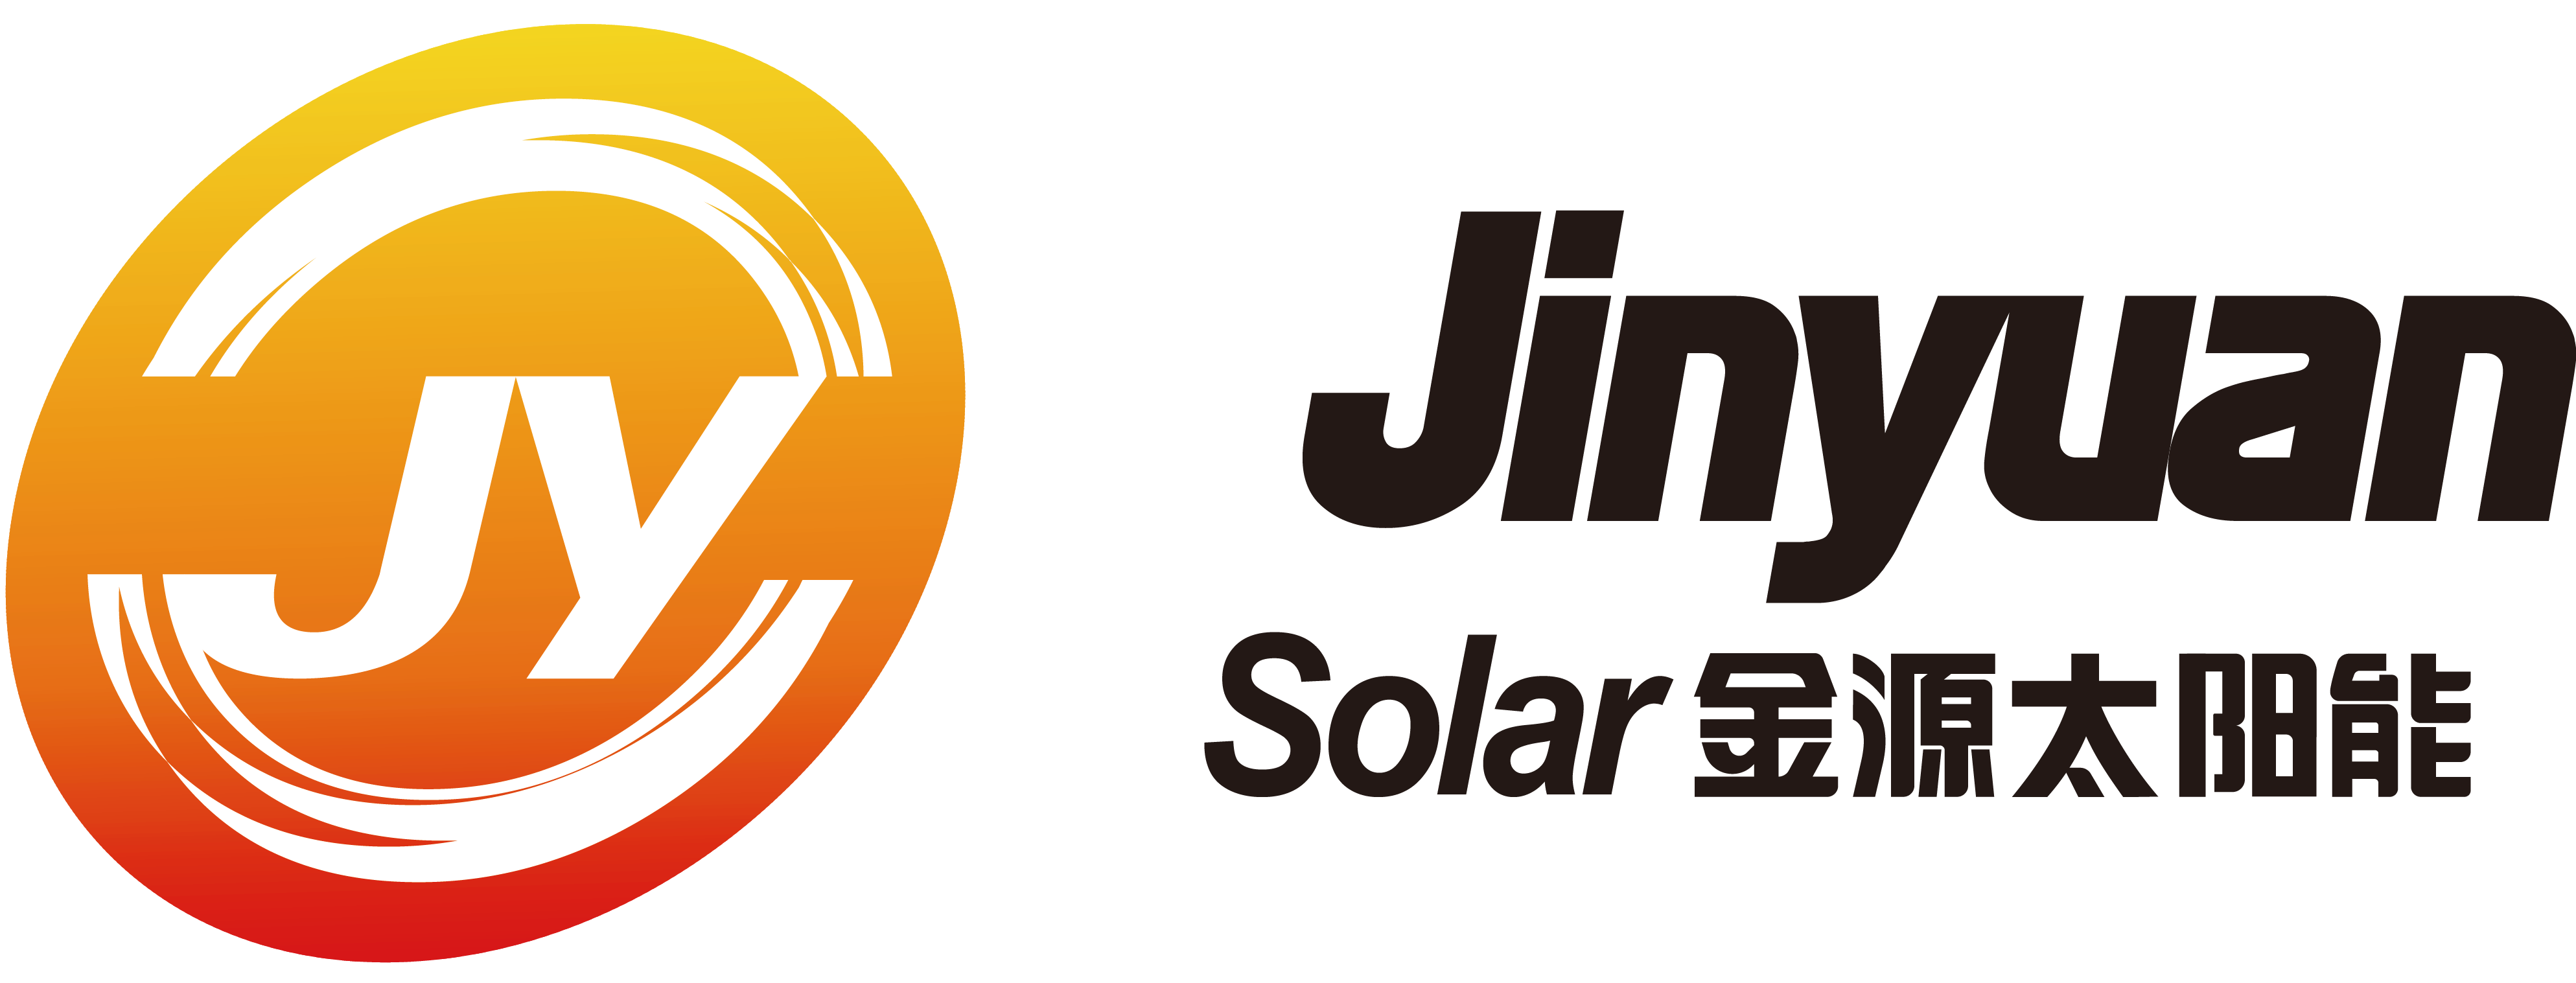 广东金源光能股份有限公司,Guangdong Jinyuan Solar Energy Co.,Ltd